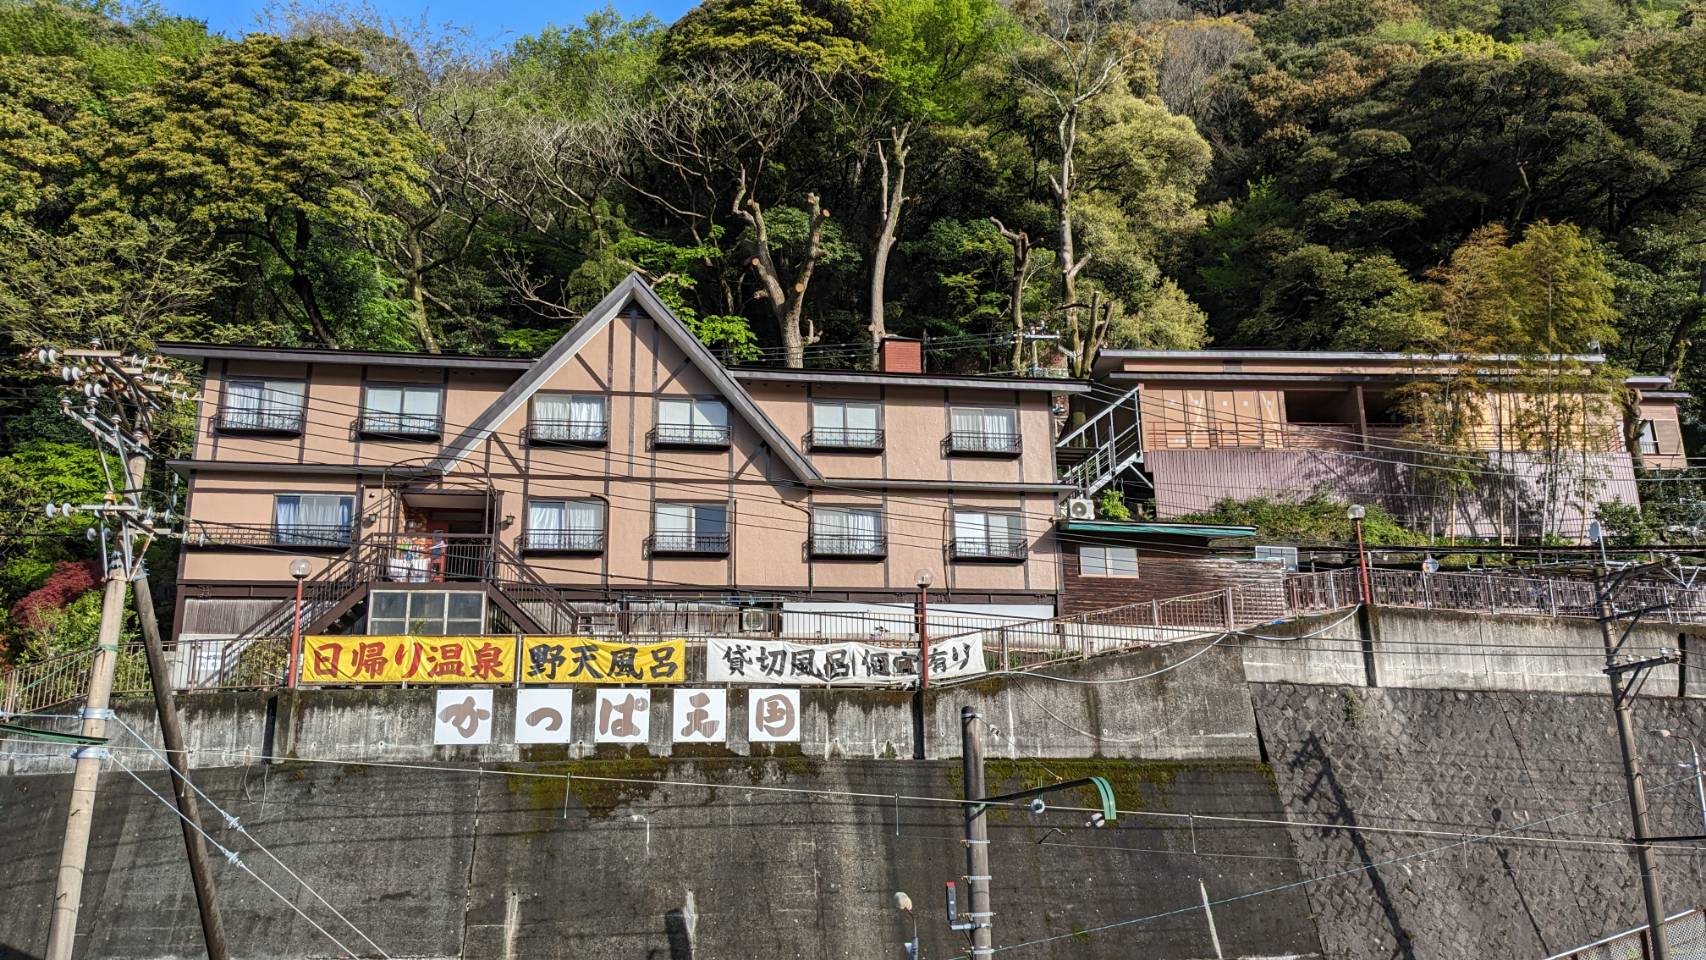 神奈川県で足湯がある温泉やど教えて下さい。